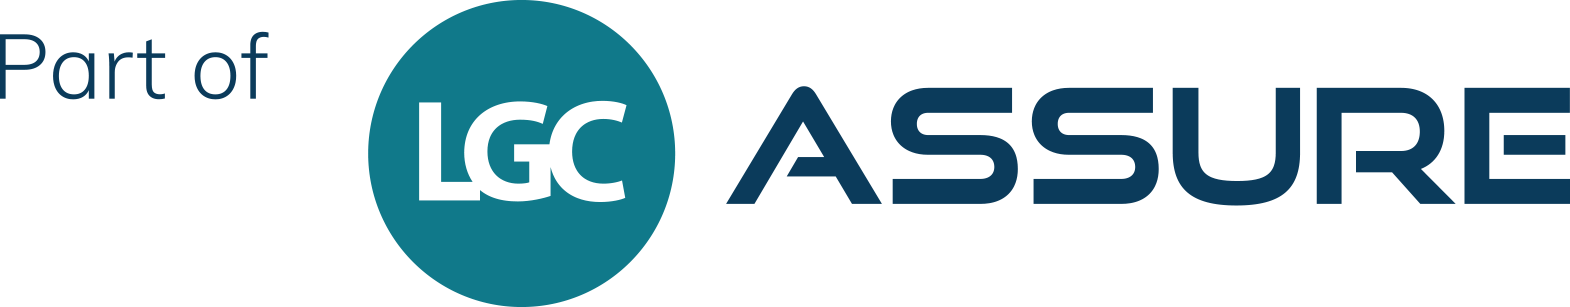 LGC ASSURE - Informed - logo